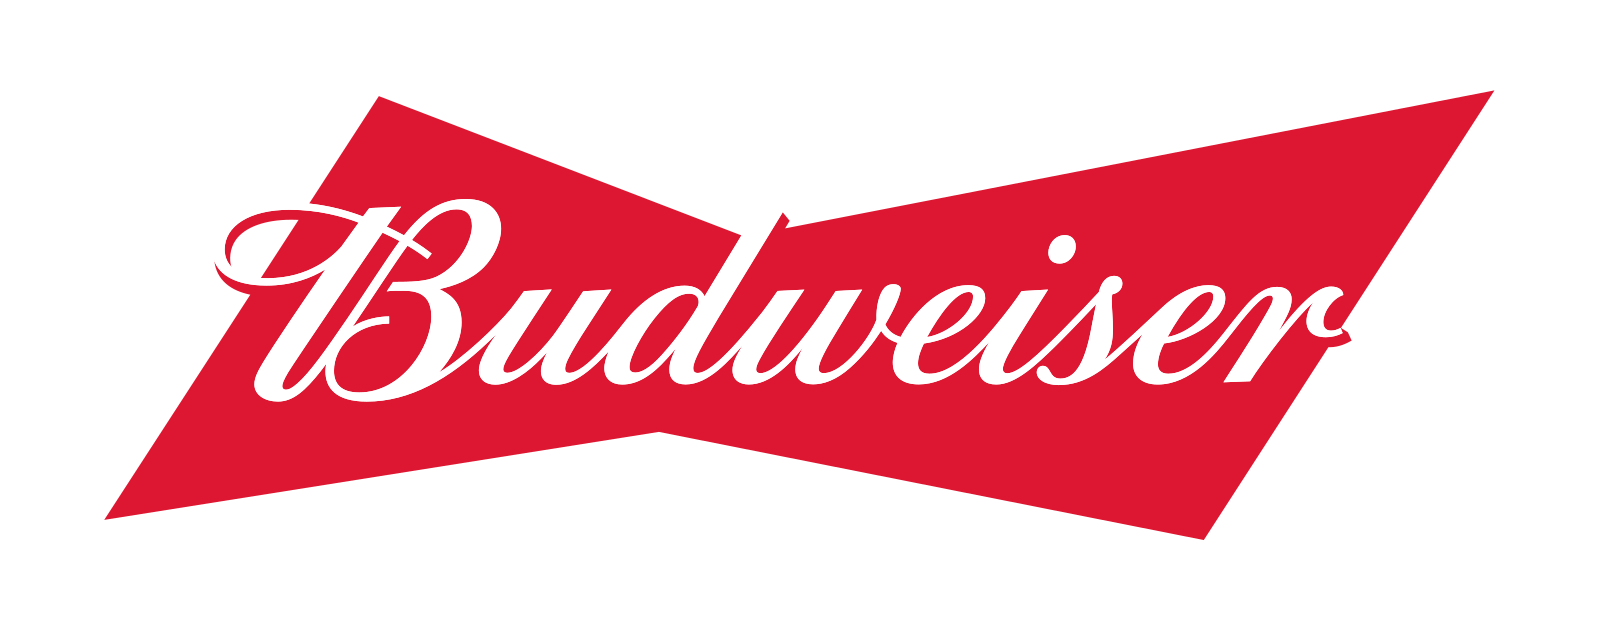 Budweiser_logo_PNG1.png